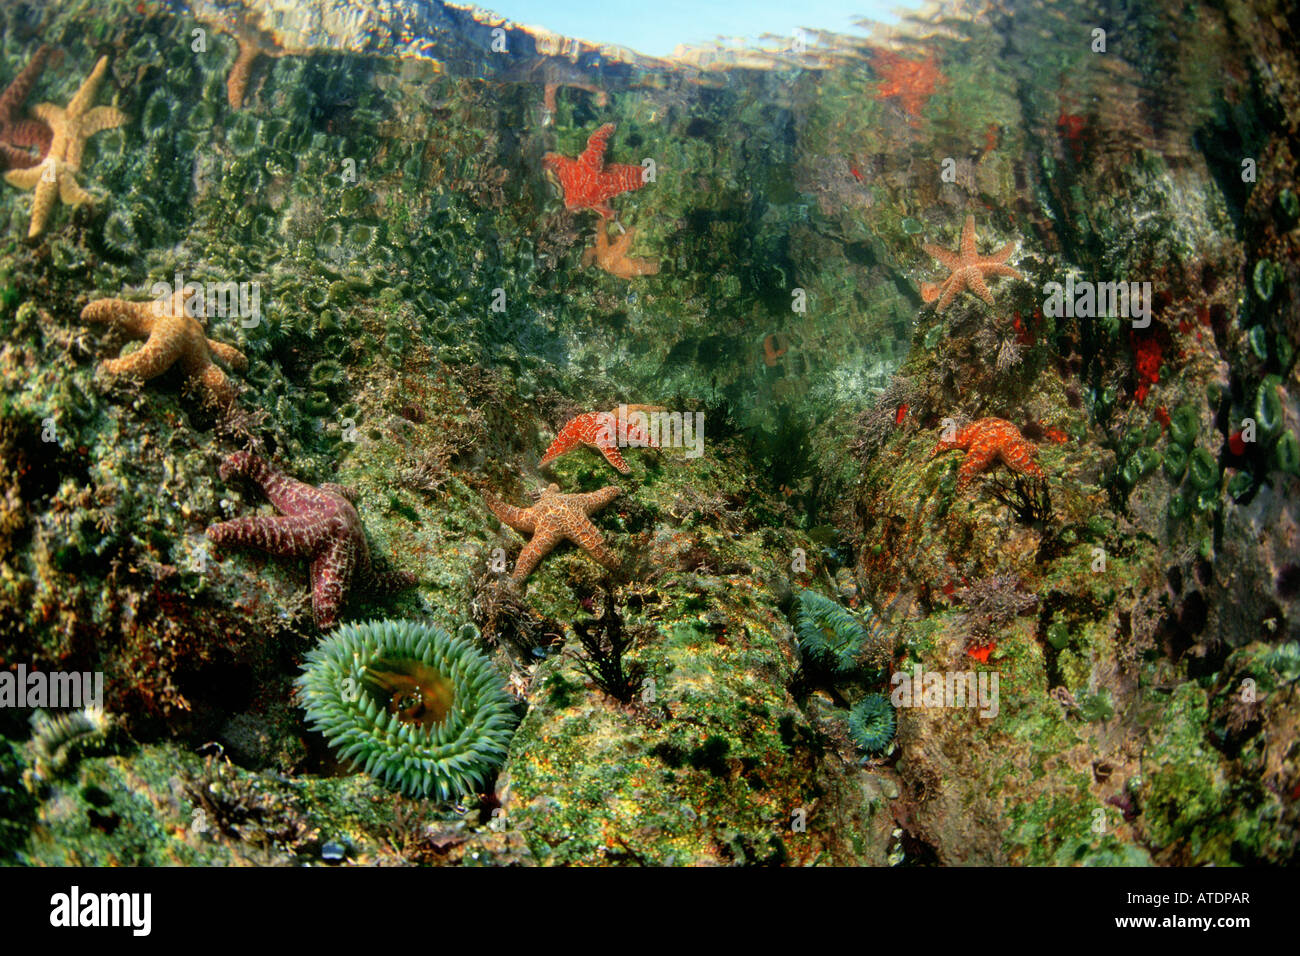 Des flaques abritent une riche diversité de plantes et d'animaux Point Soberanes Monterey Bay Marine Sanctuary Californie Nat Banque D'Images